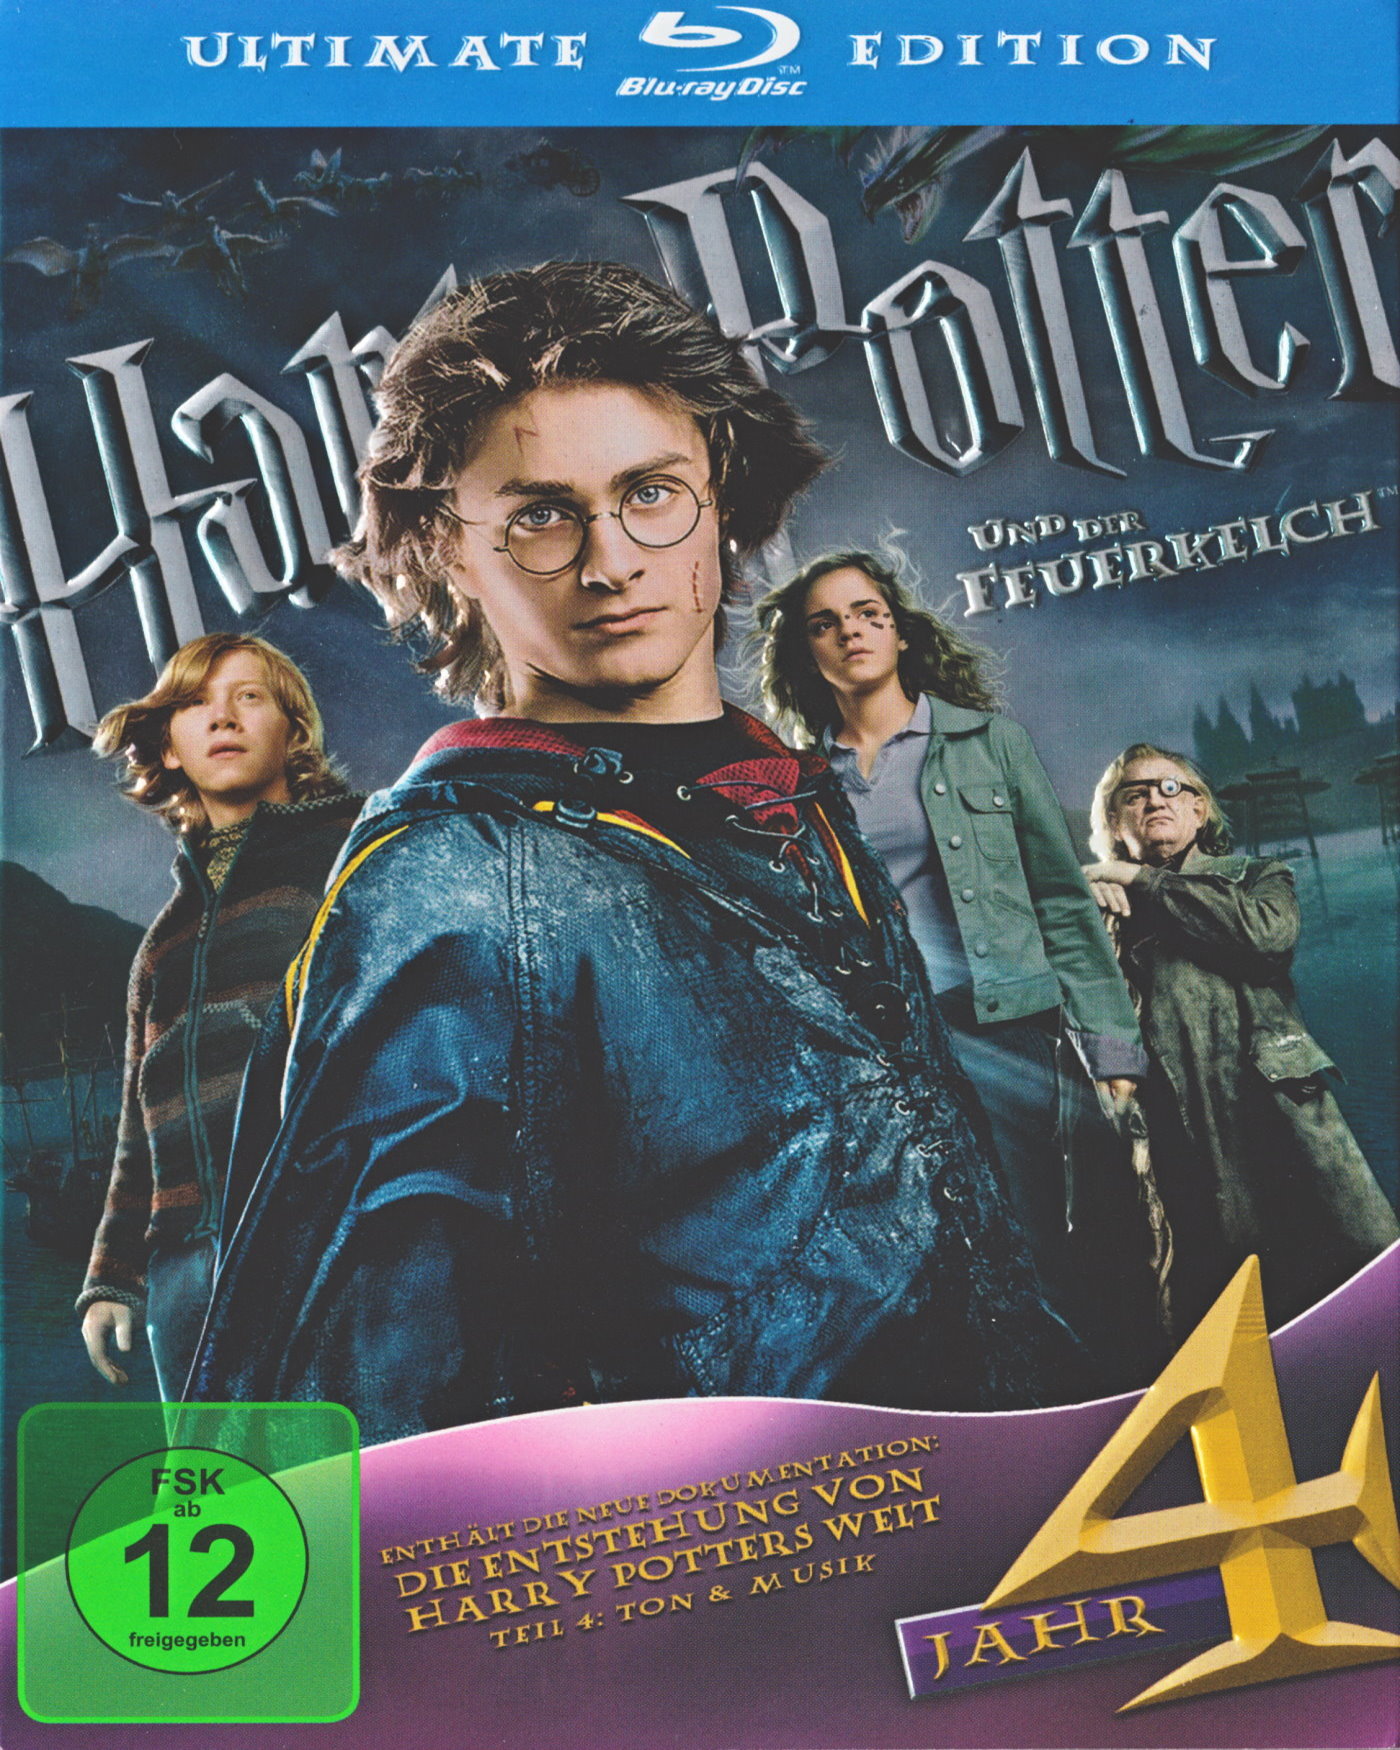 Cover - Harry Potter und der Feuerkelch.jpg